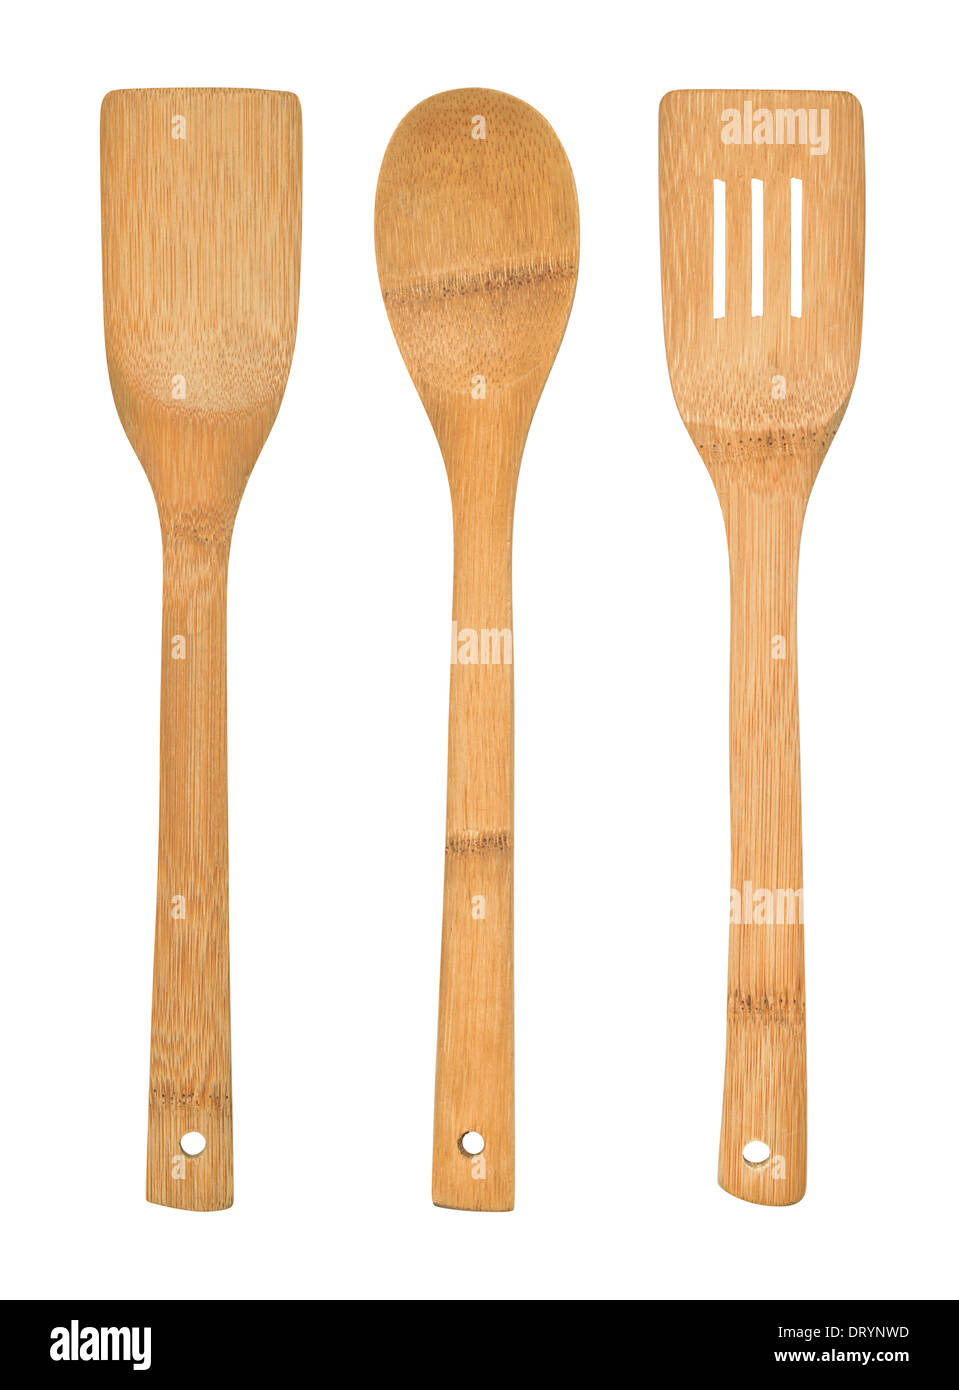 Juego completo de utensilios de cocina de bambú aislados sobre un fondo blanco. Foto de stock